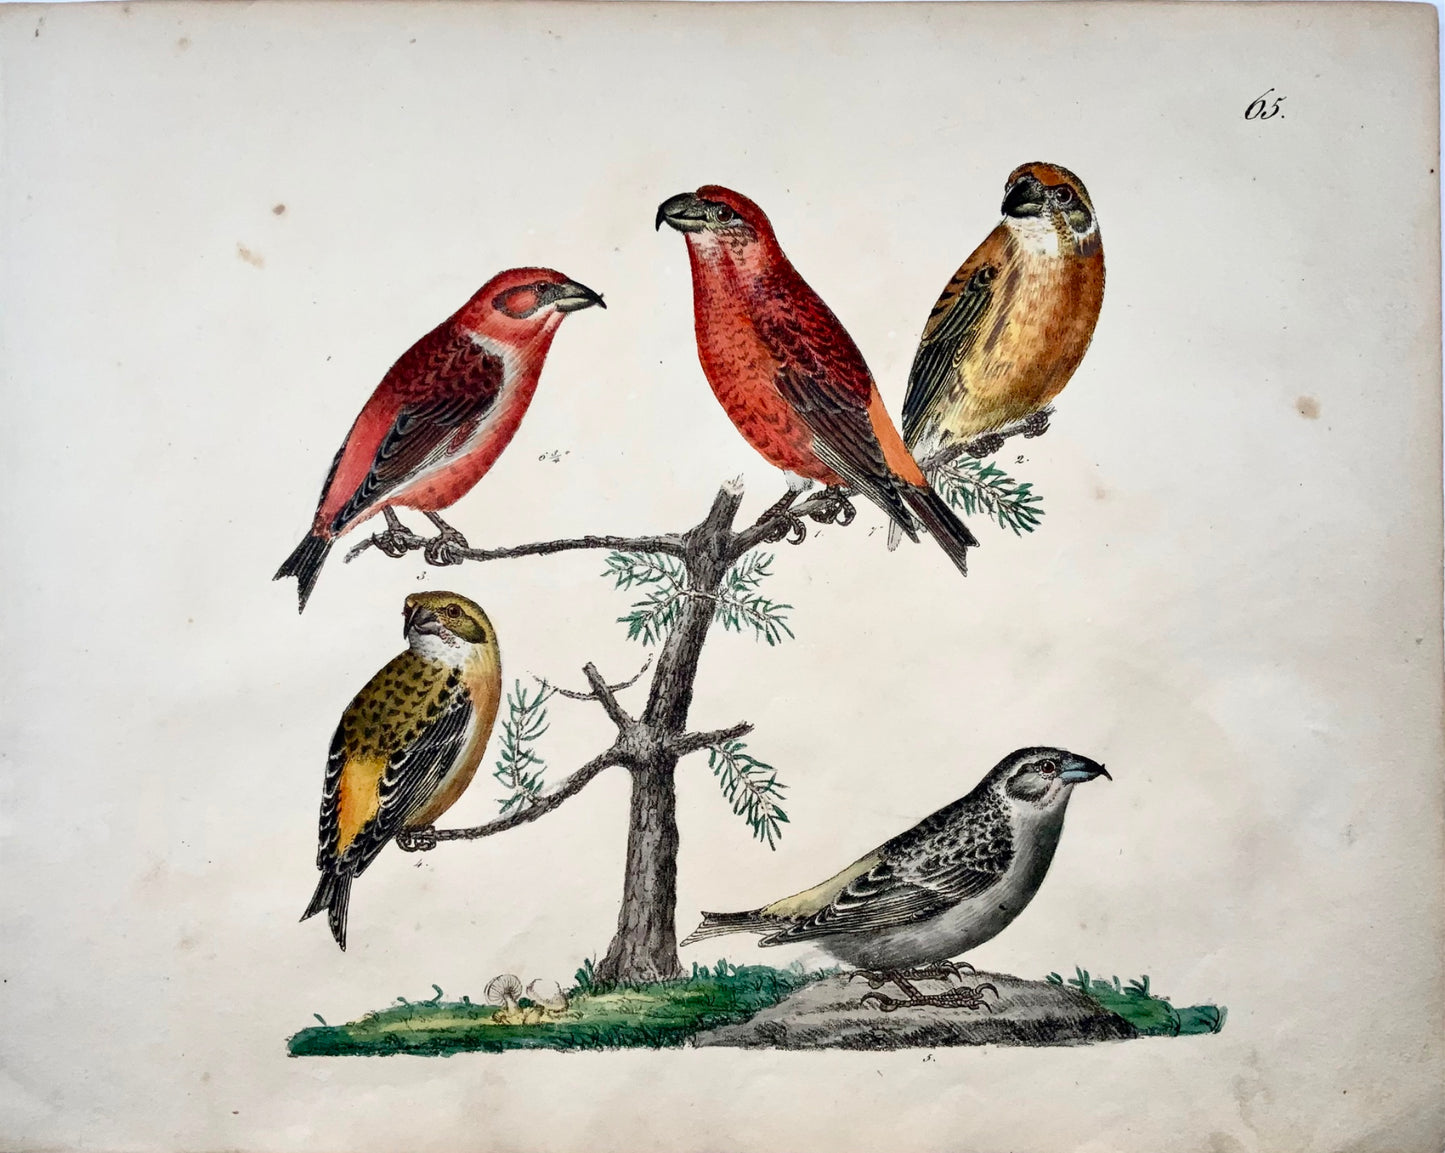 1819 Gros-bec, ornithologie, Strack, lithographie à la craie, couleur à la main